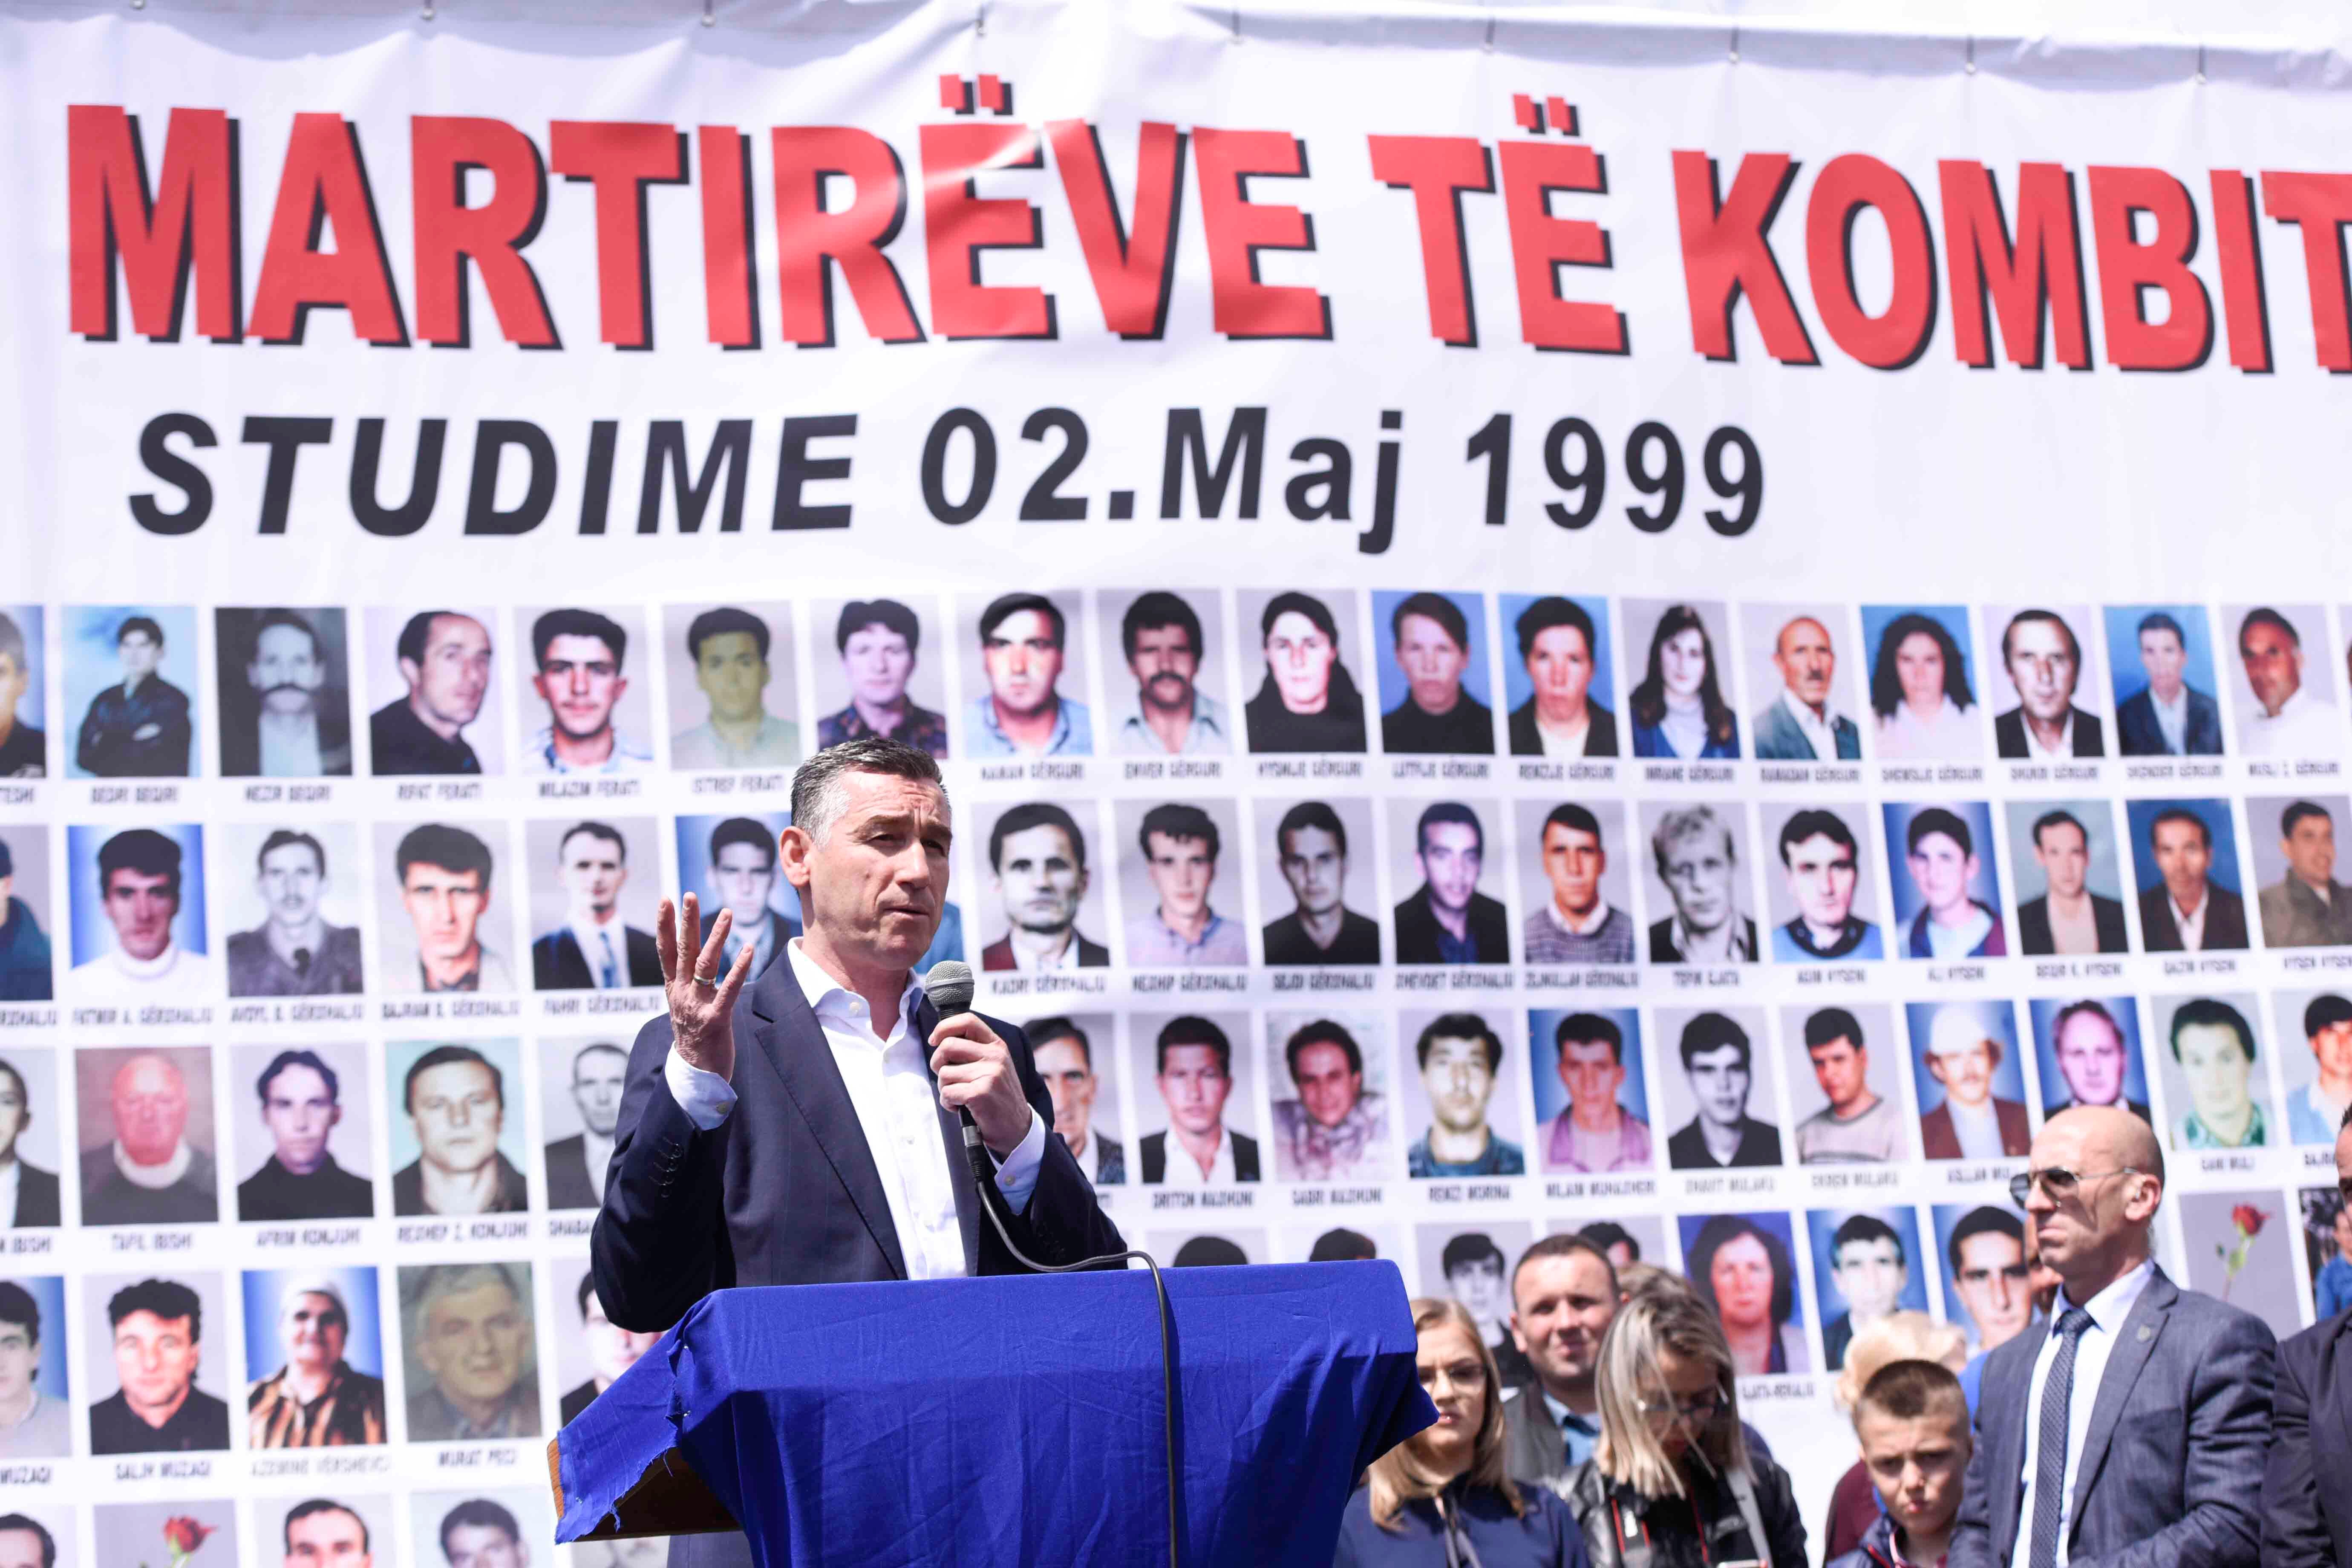 Veseli: Së shpejti do të formohet një Tribunal për gjykimin e krimeve serbe në Kosovë